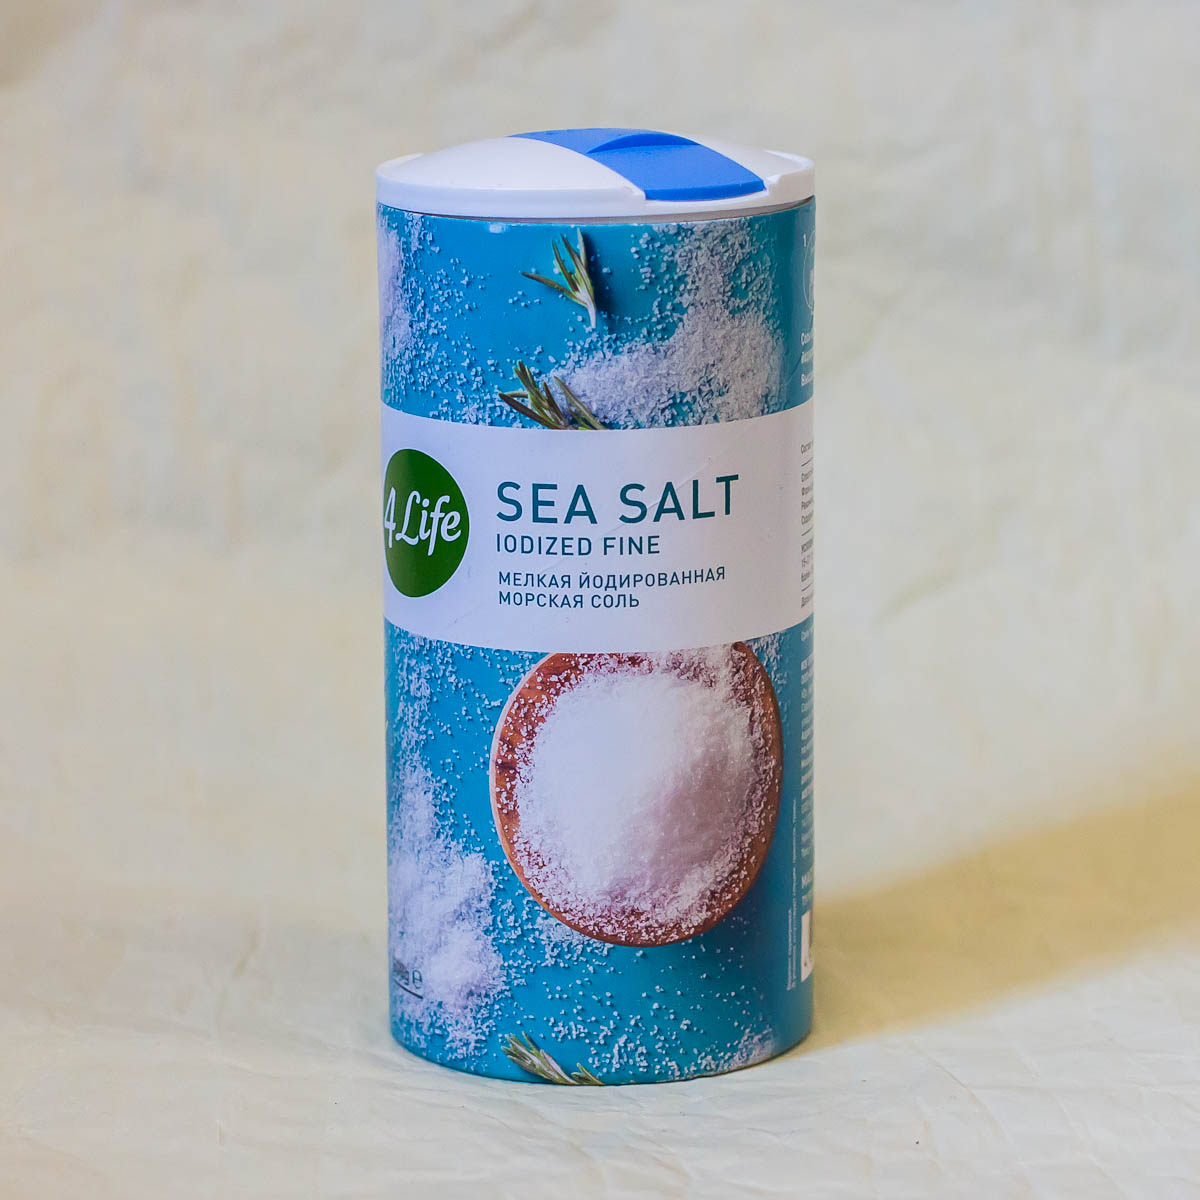 Купить морскую соль в москве. Соль морская 4life йодированная мелкая. 4life морская мелкая соль 500. Соль морская йодир.мелкая 500гр 4 жизни. Соль морская йодированная мелкая Sea Salt 500 гр.